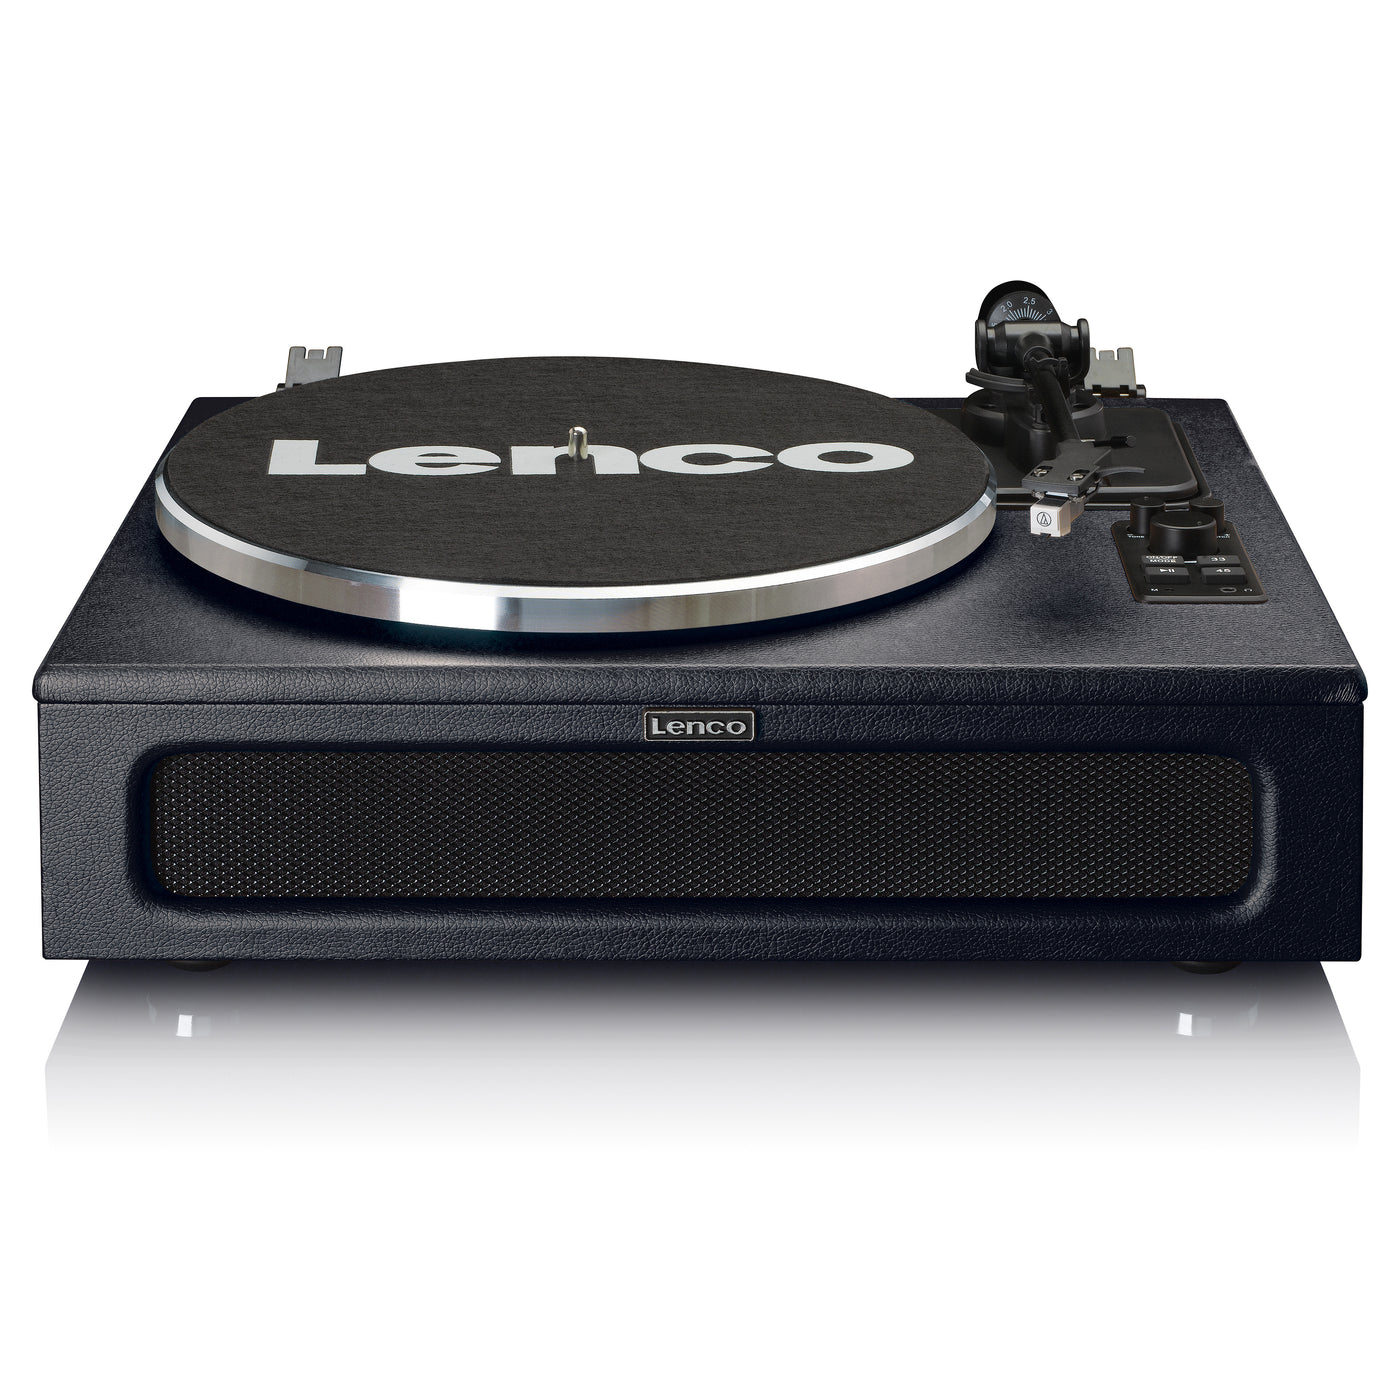 Lenco LS-430BK - Platine vinyle avec 4 haut-parleurs incorporés - Noir